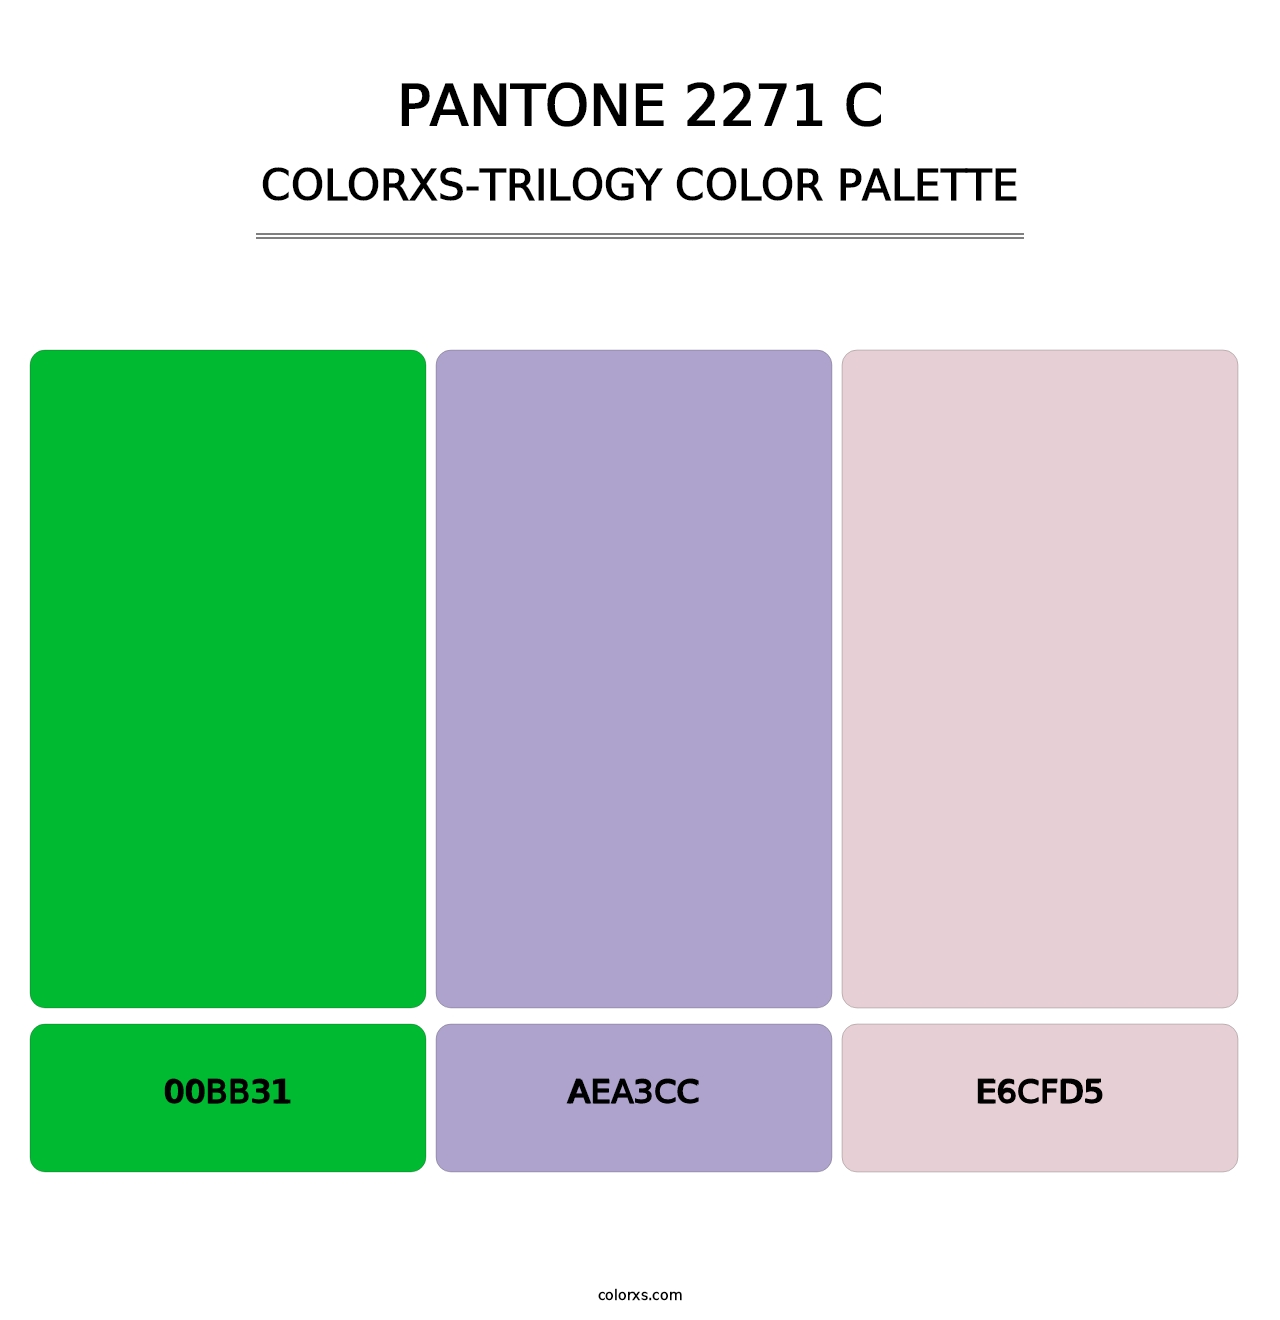 PANTONE 2271 C - Colorxs Trilogy Palette